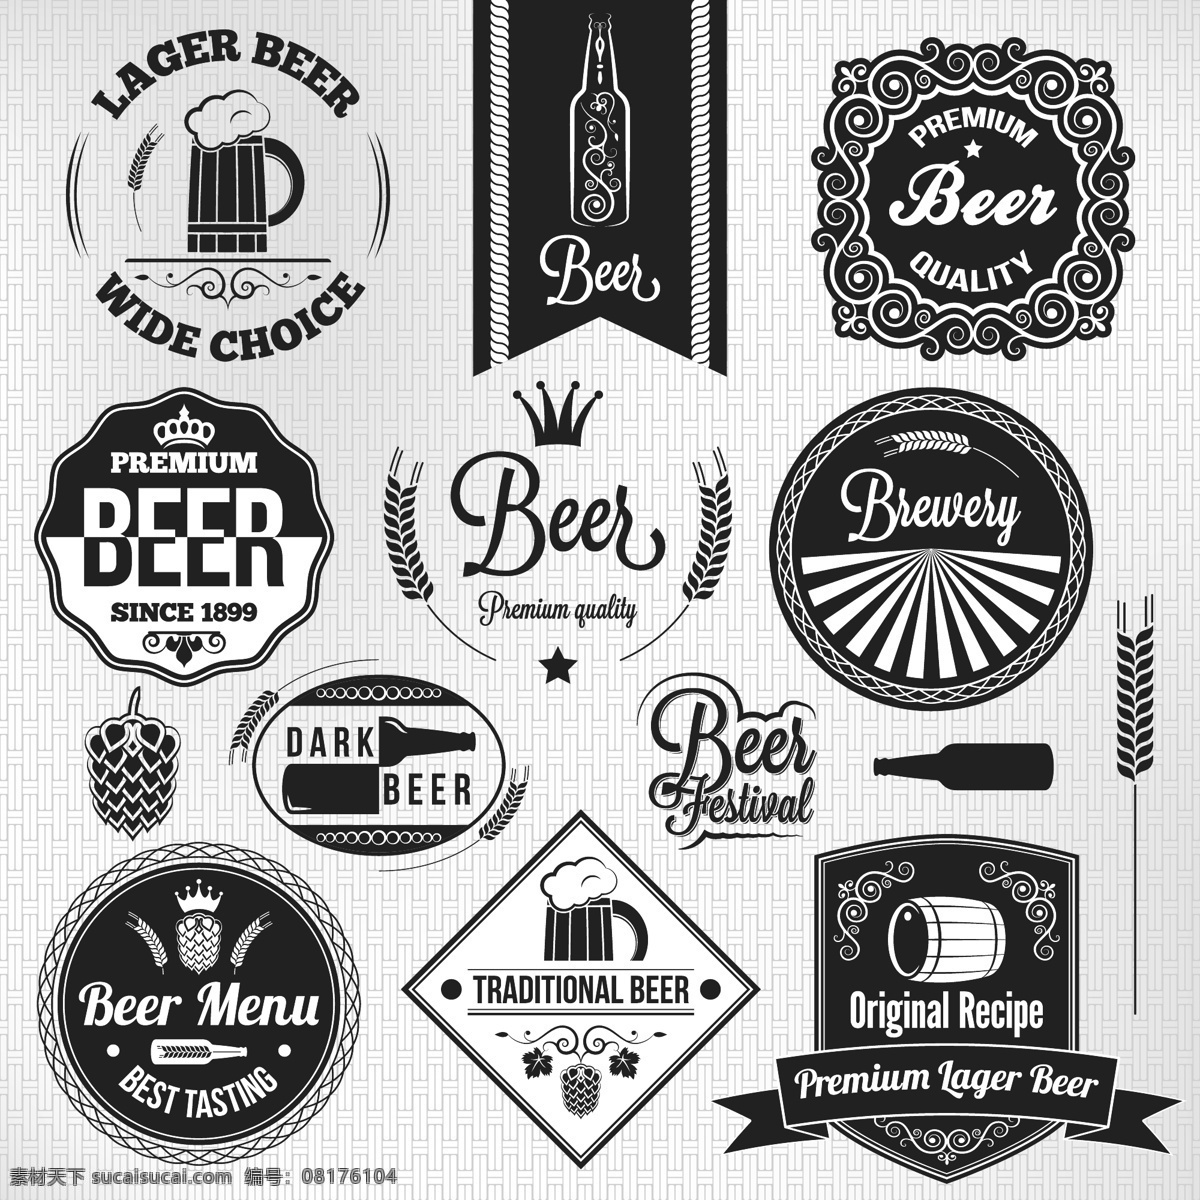 啤酒图标 啤酒 啤酒设计 酒水 酒水设计 啤酒标志 啤酒商标 啤酒logo 小图标 小标志 图标 logo 标志 vi icon 标识 图标设计 logo设计 标志设计 标识设计 矢量设计 矢量图标 欧美图标 欧美设计 标志图标 标识标志图标 矢量